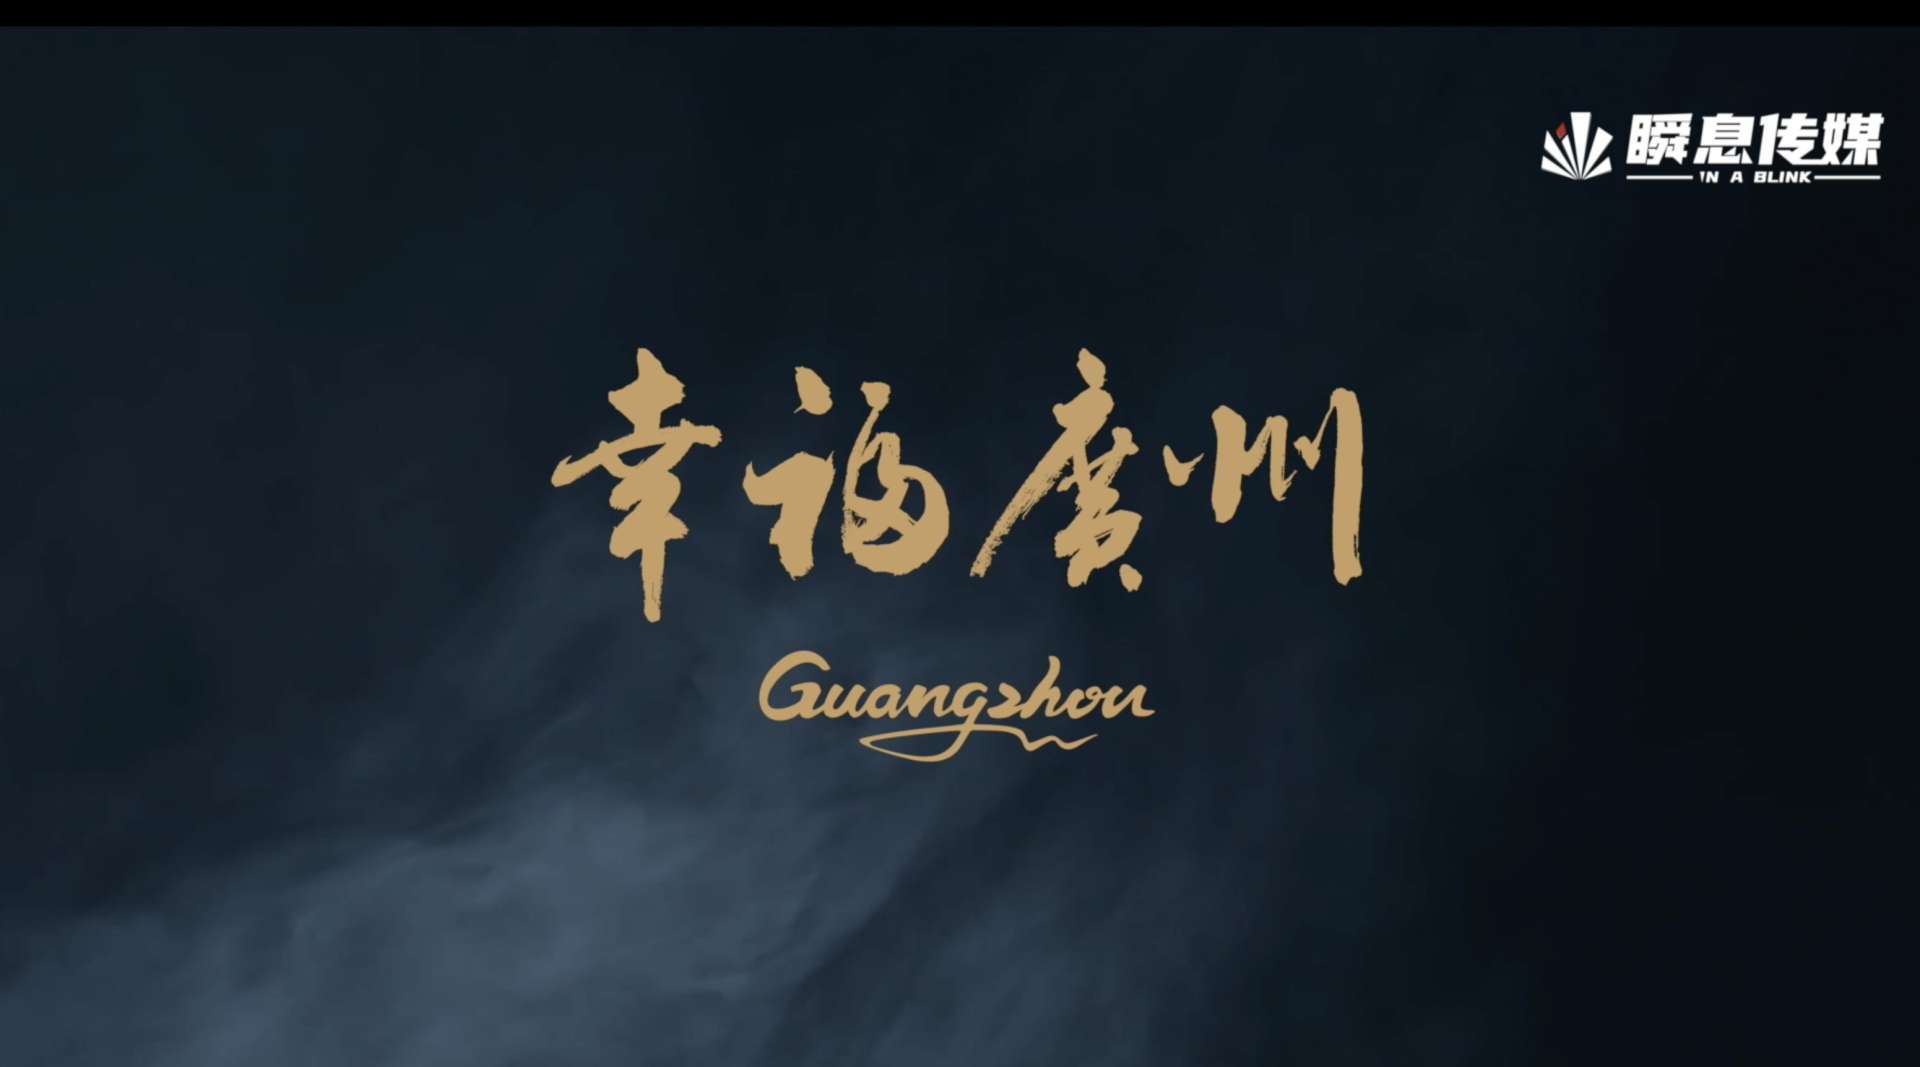 《醒狮》广州歌舞剧院2019贺岁宣传片